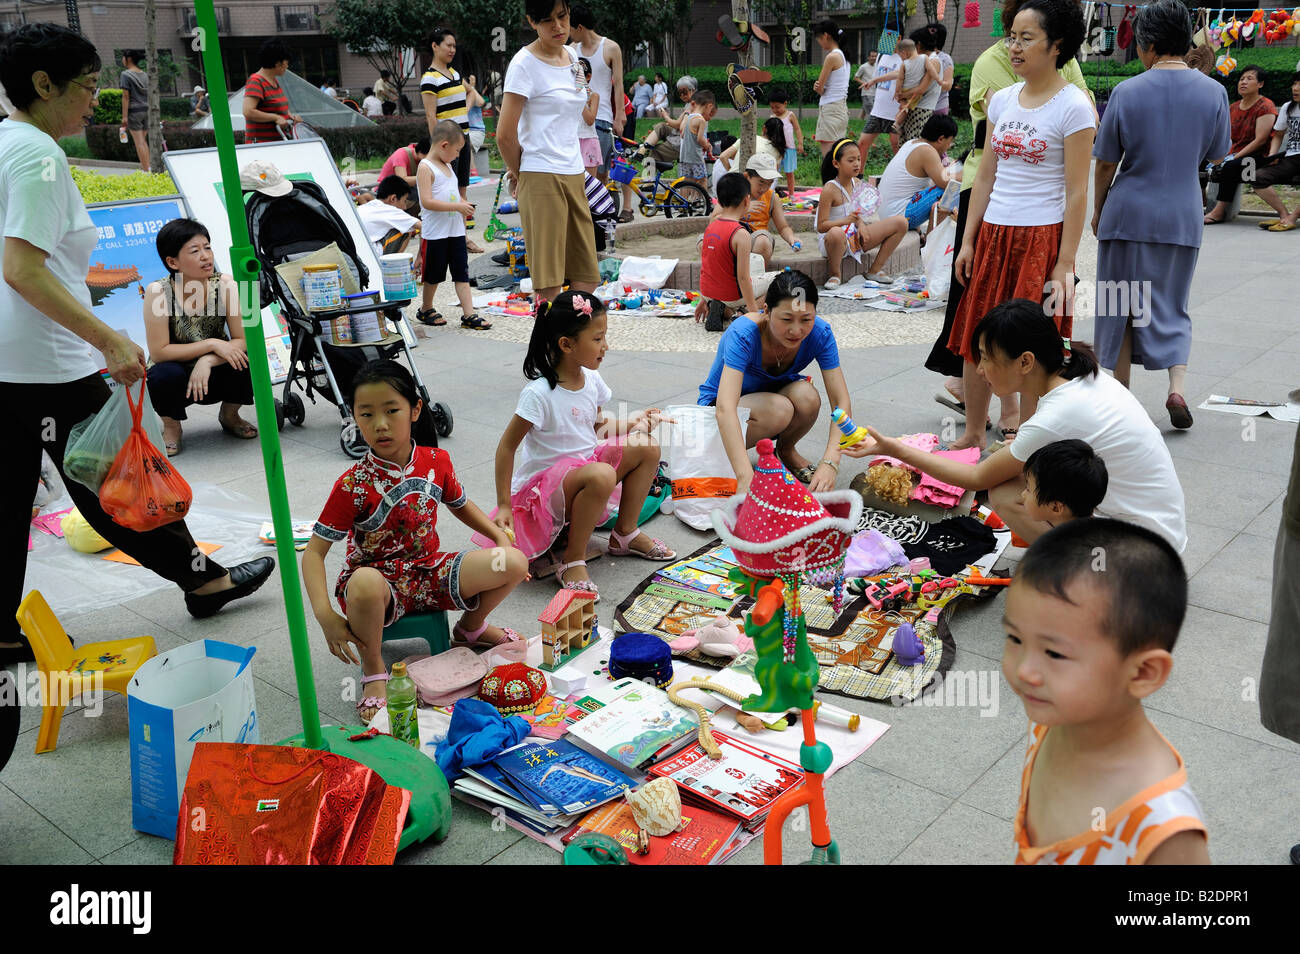 Flohmarkt am Sonntag in einer Gemeinde in Peking, China. 26. Juli 2008 Stockfoto